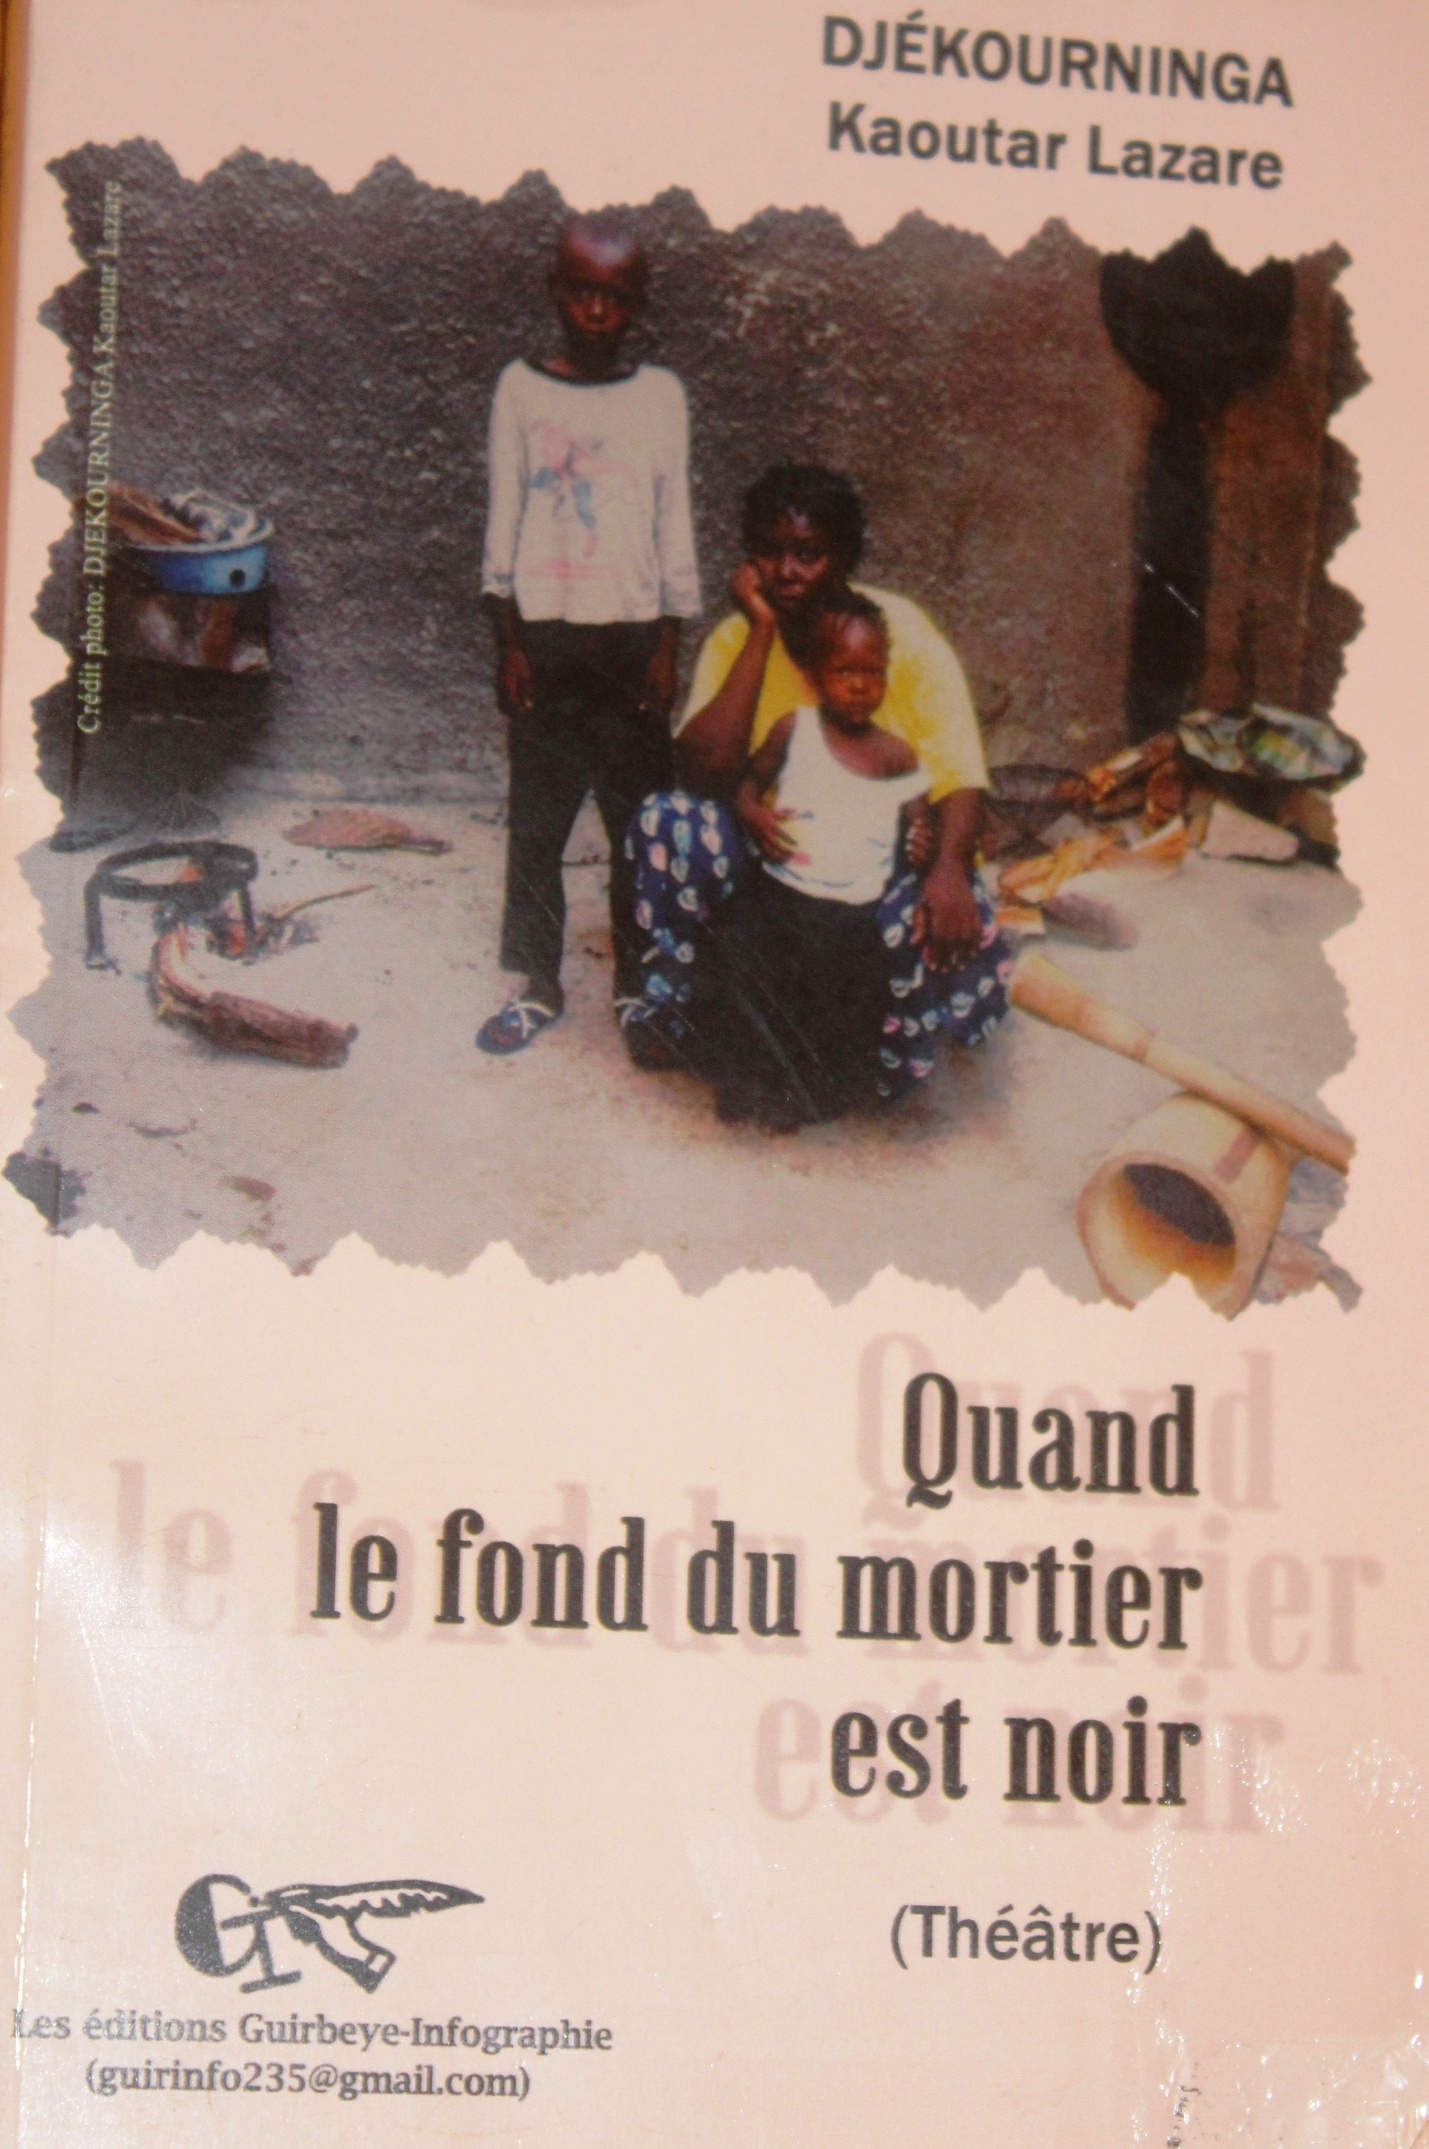 Livre : “Quand le fond du mortier est noir” par Djékourninga Kaoutar Lazare